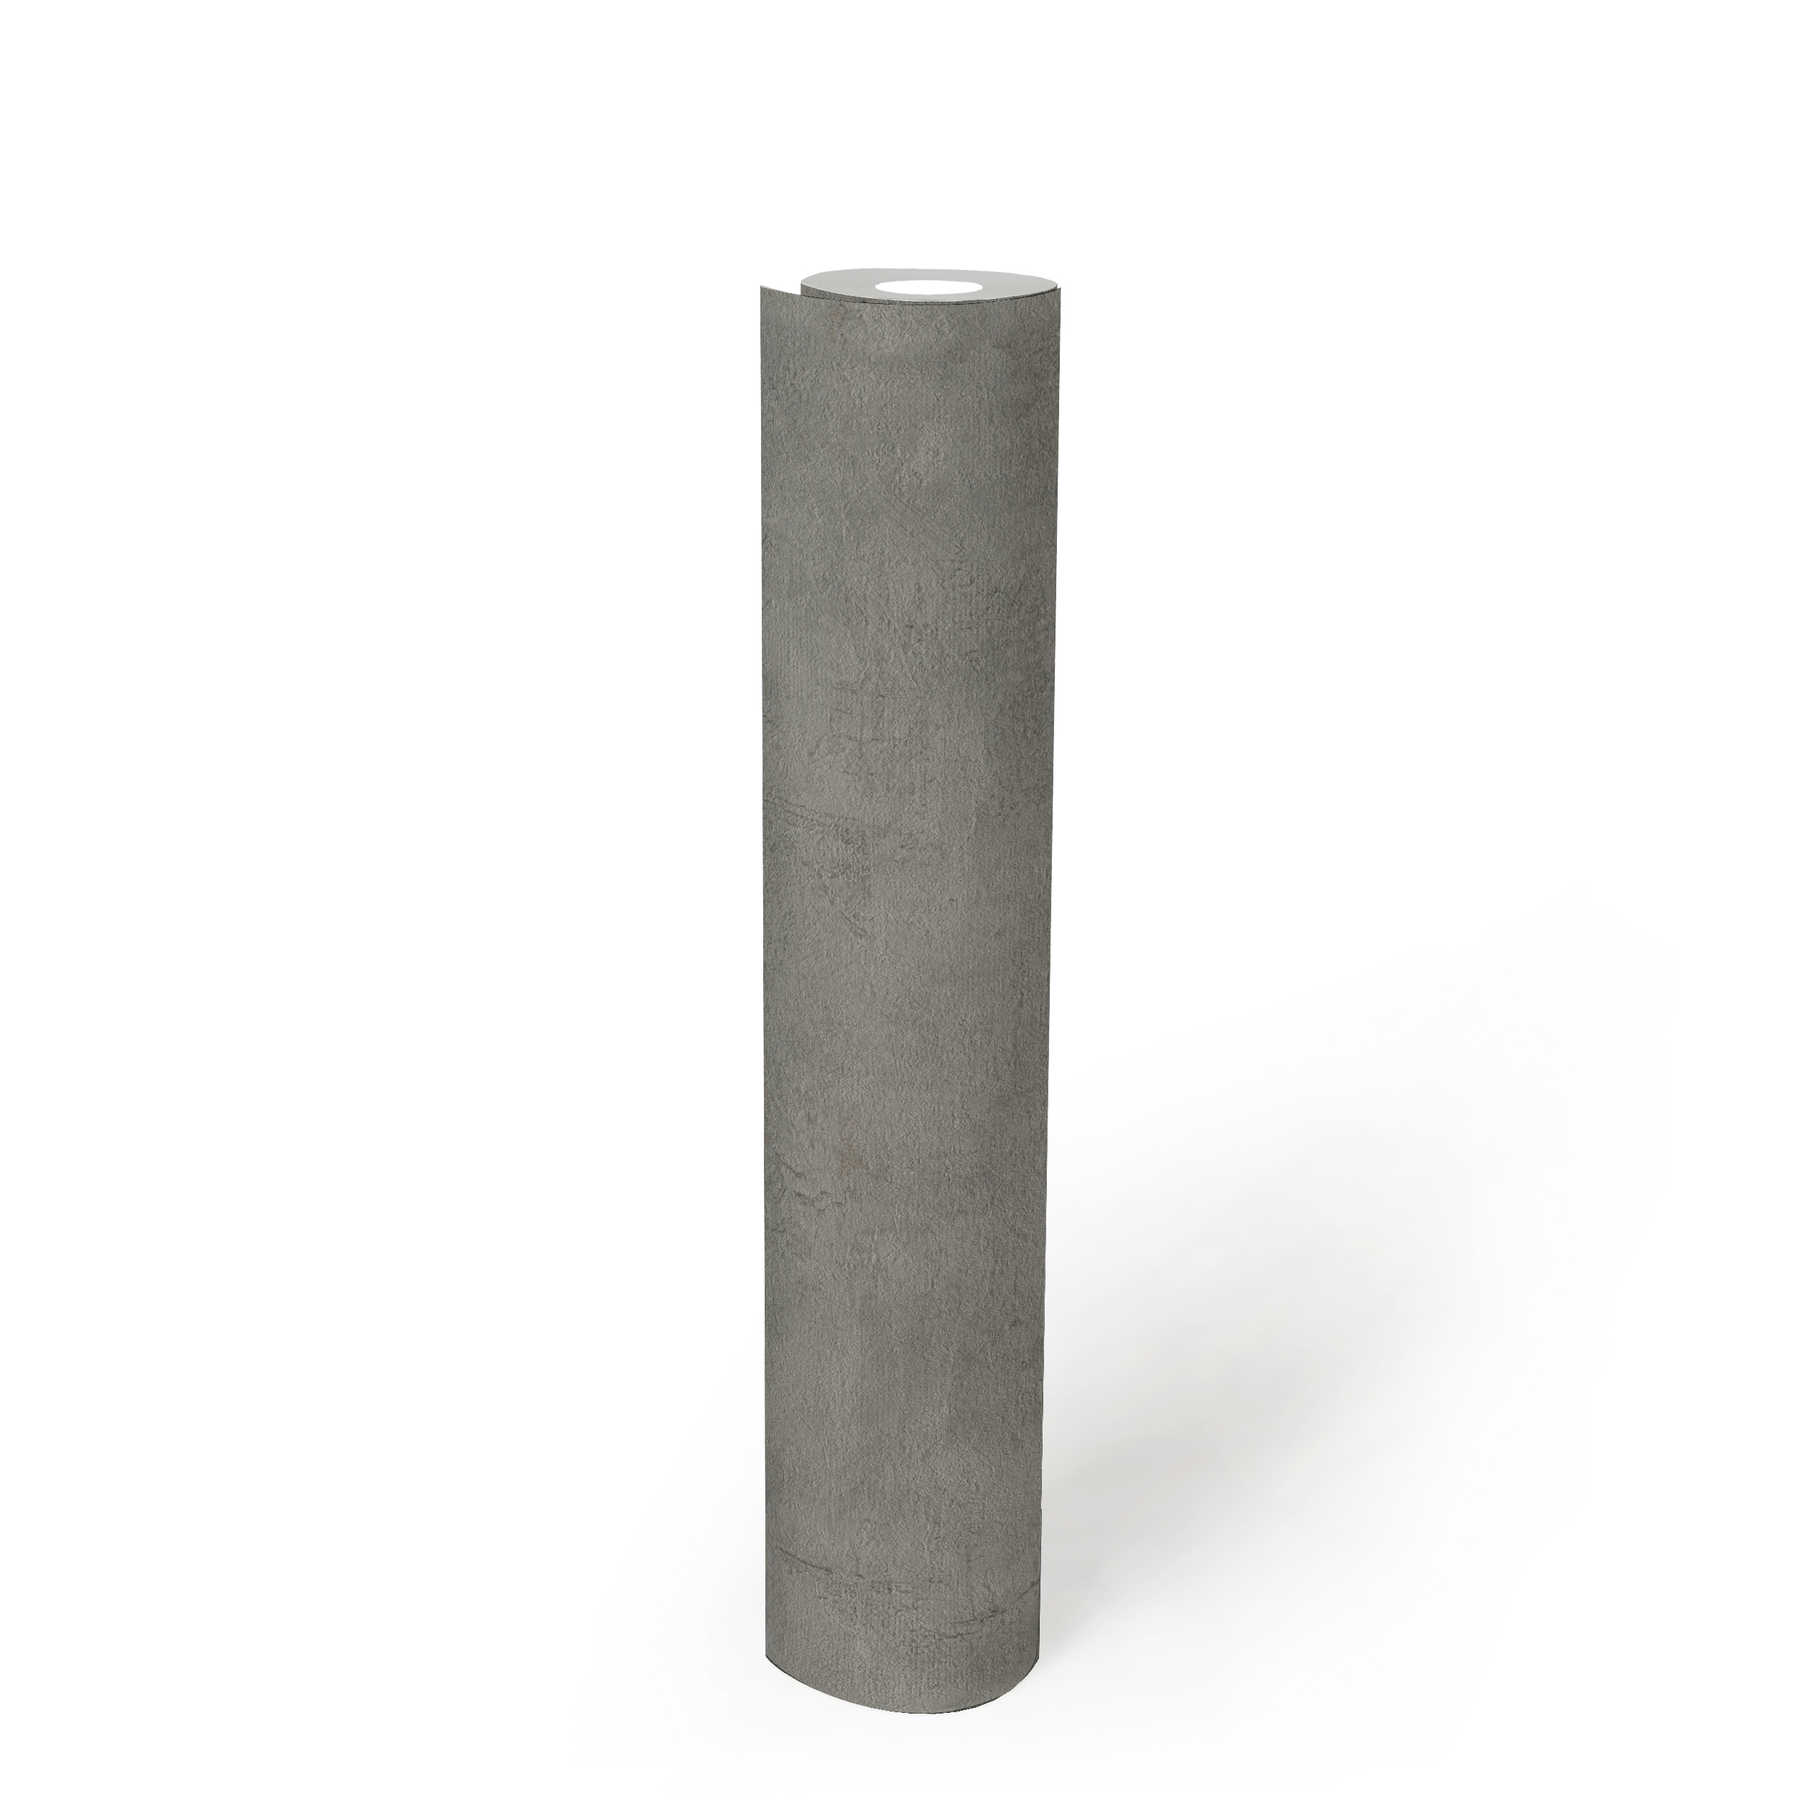             Structuurbehang met donkergrijze pleisterlook - grijs
        